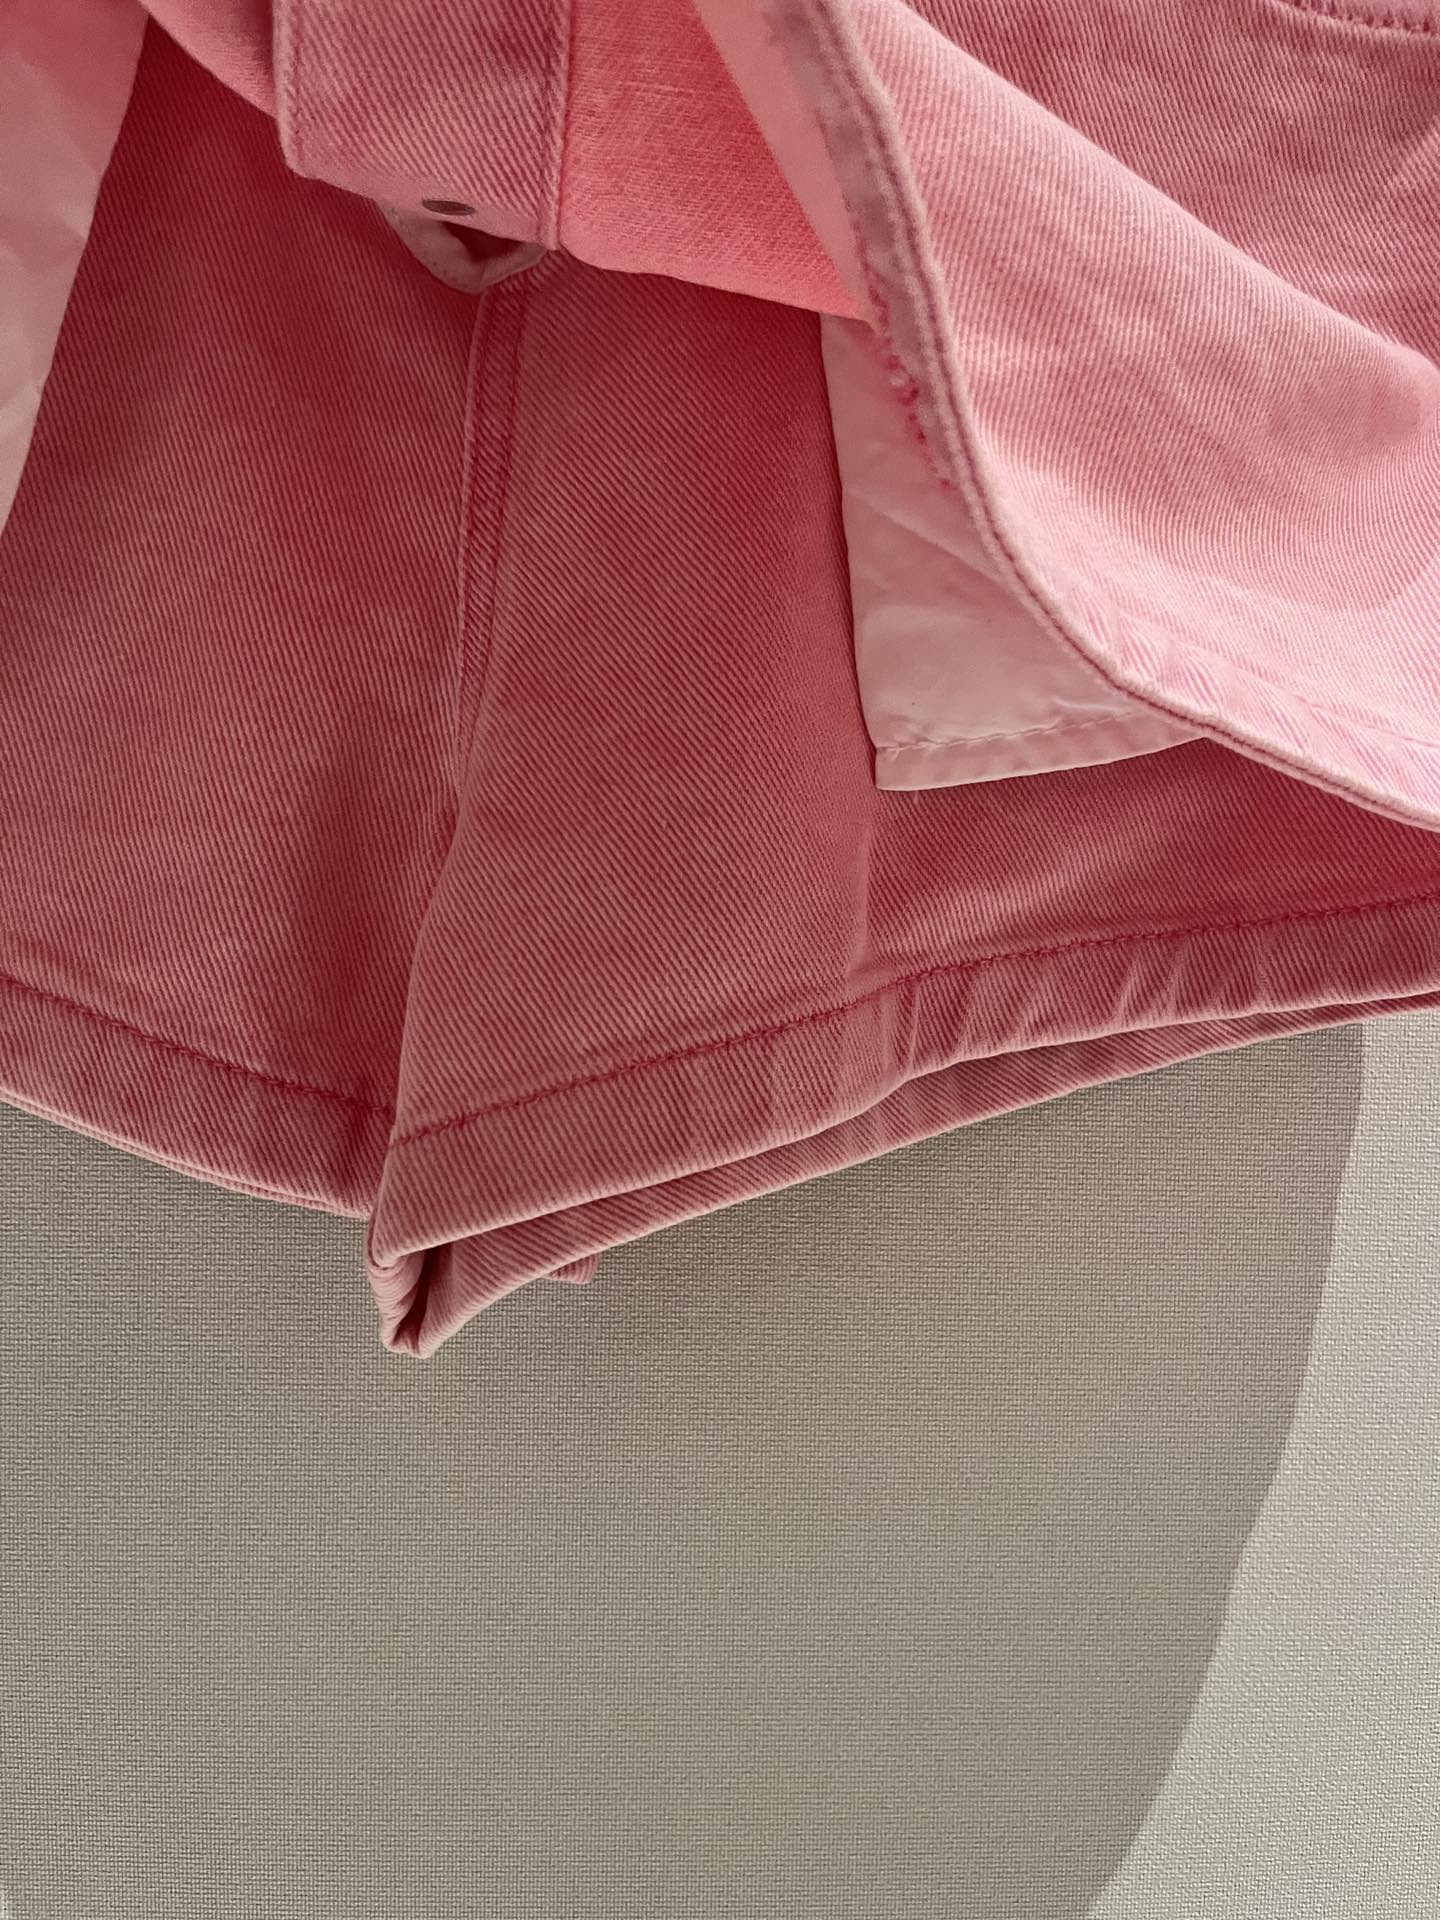 最安値！大人気SMFKスカート素材偽物 品質保証 デニム カジュアルスカート ファッション ピンク_8